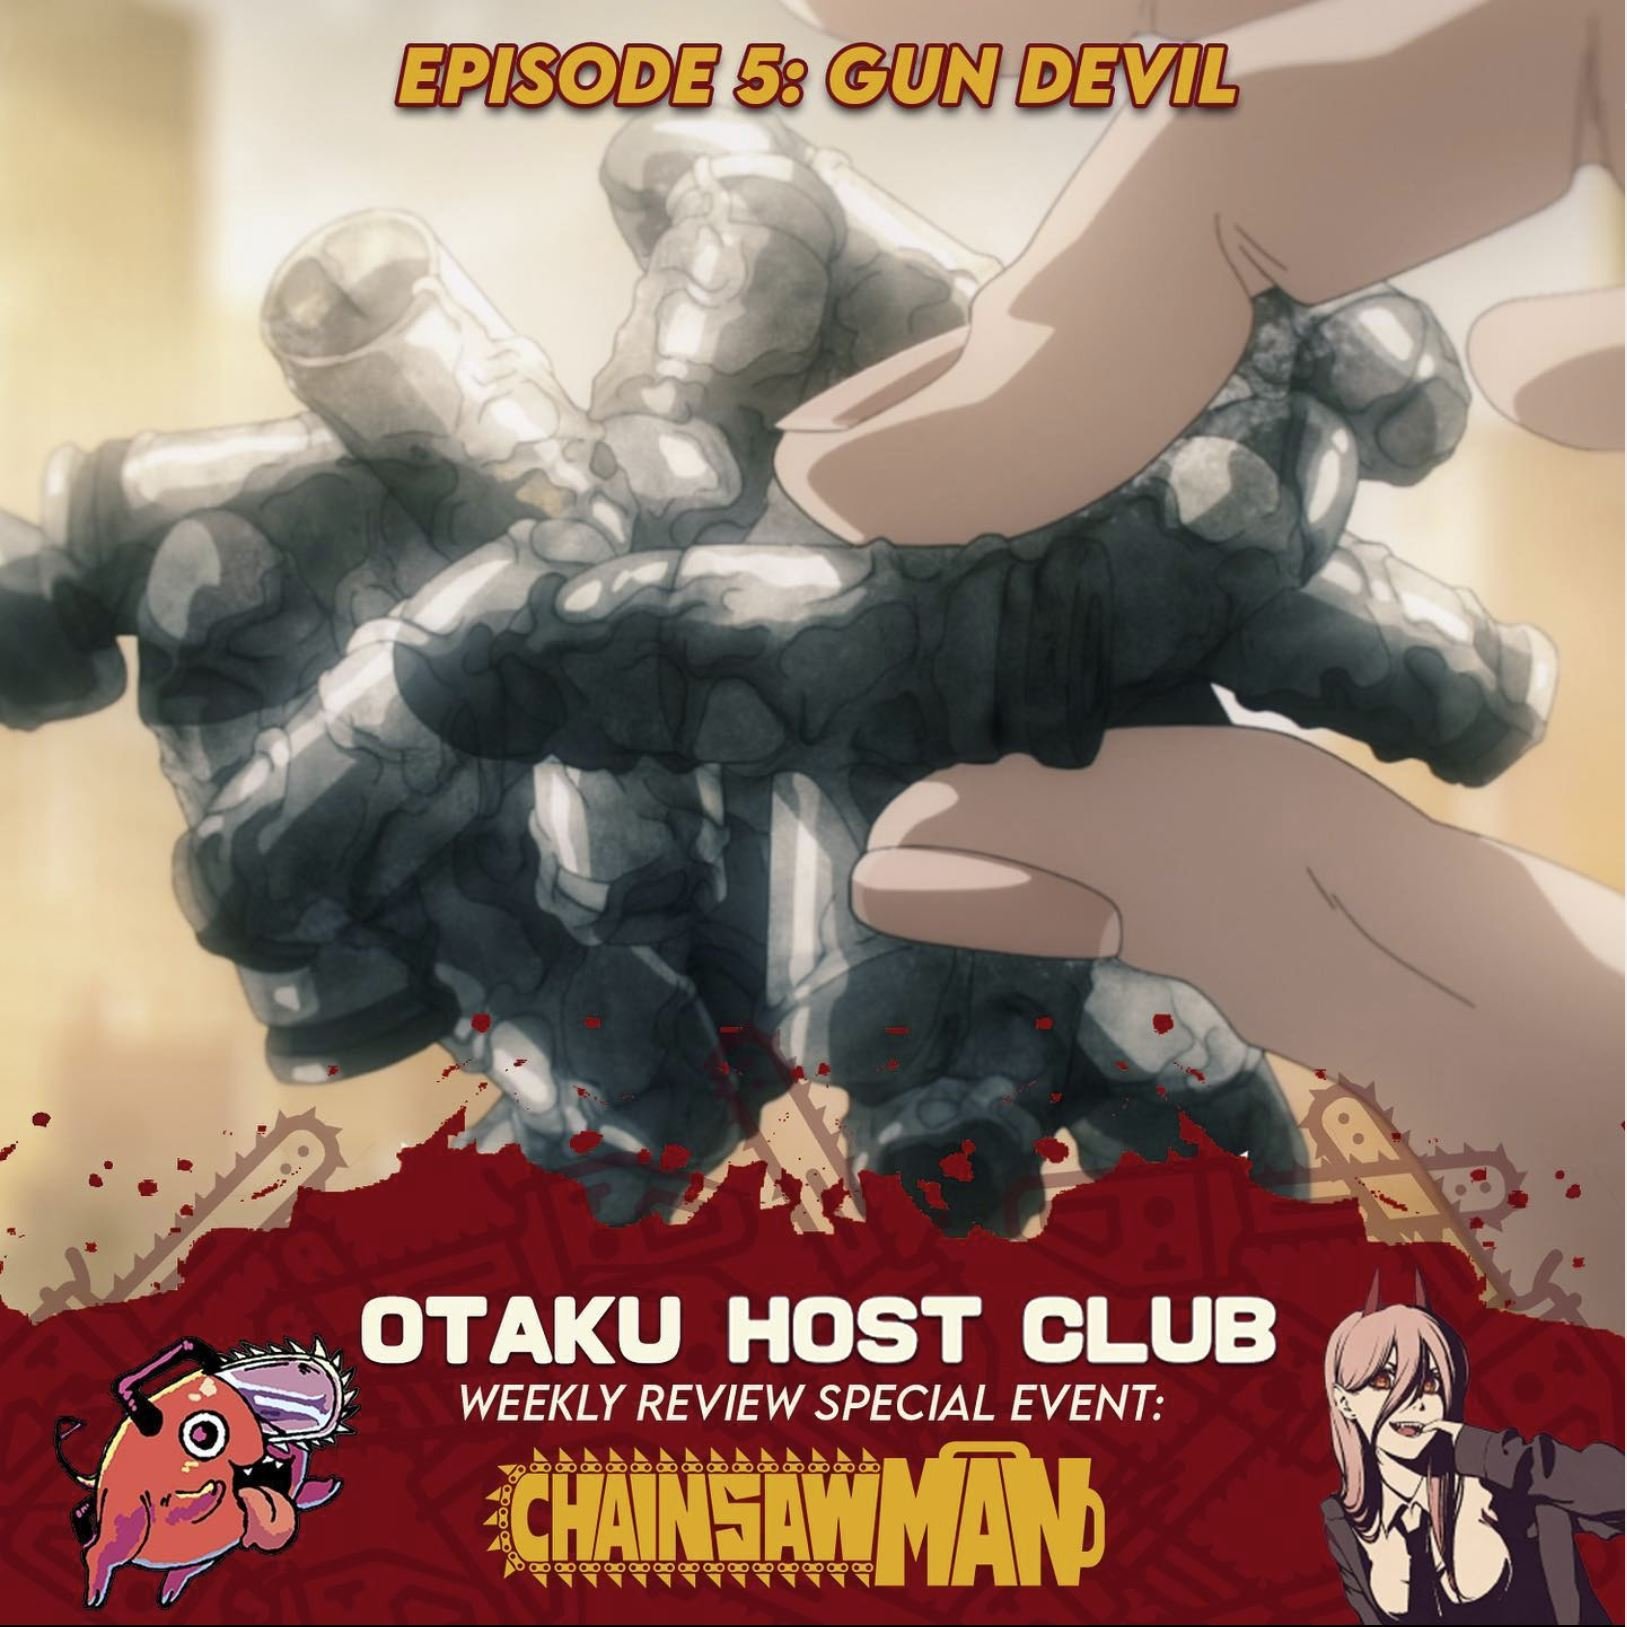 Chainsaw Man season 1, episode 5 recap - “Gun Devil”